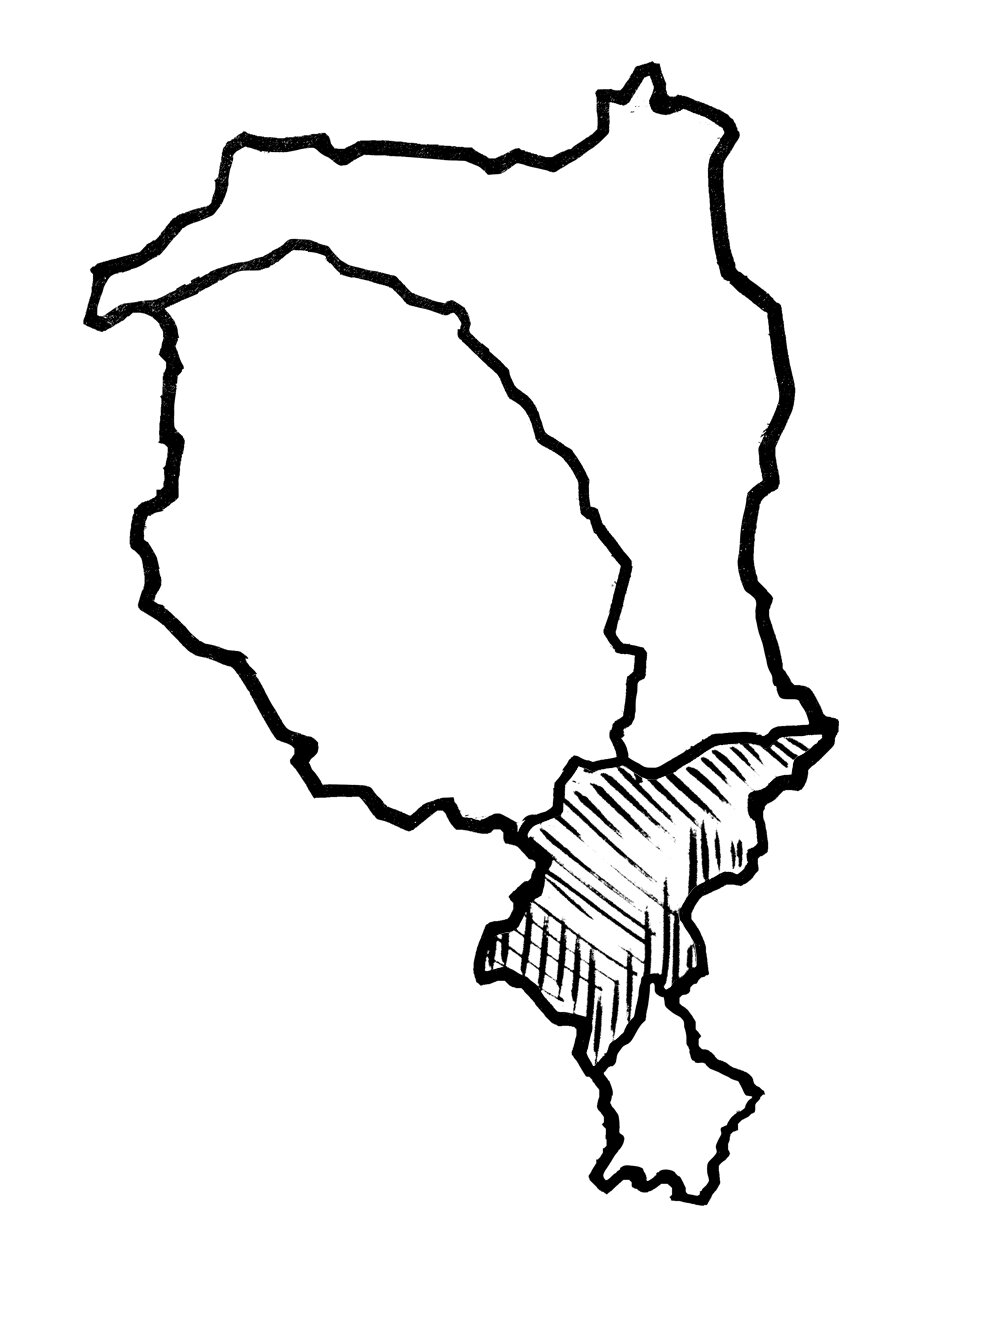 Karte_Tessin_Regionen.jpg